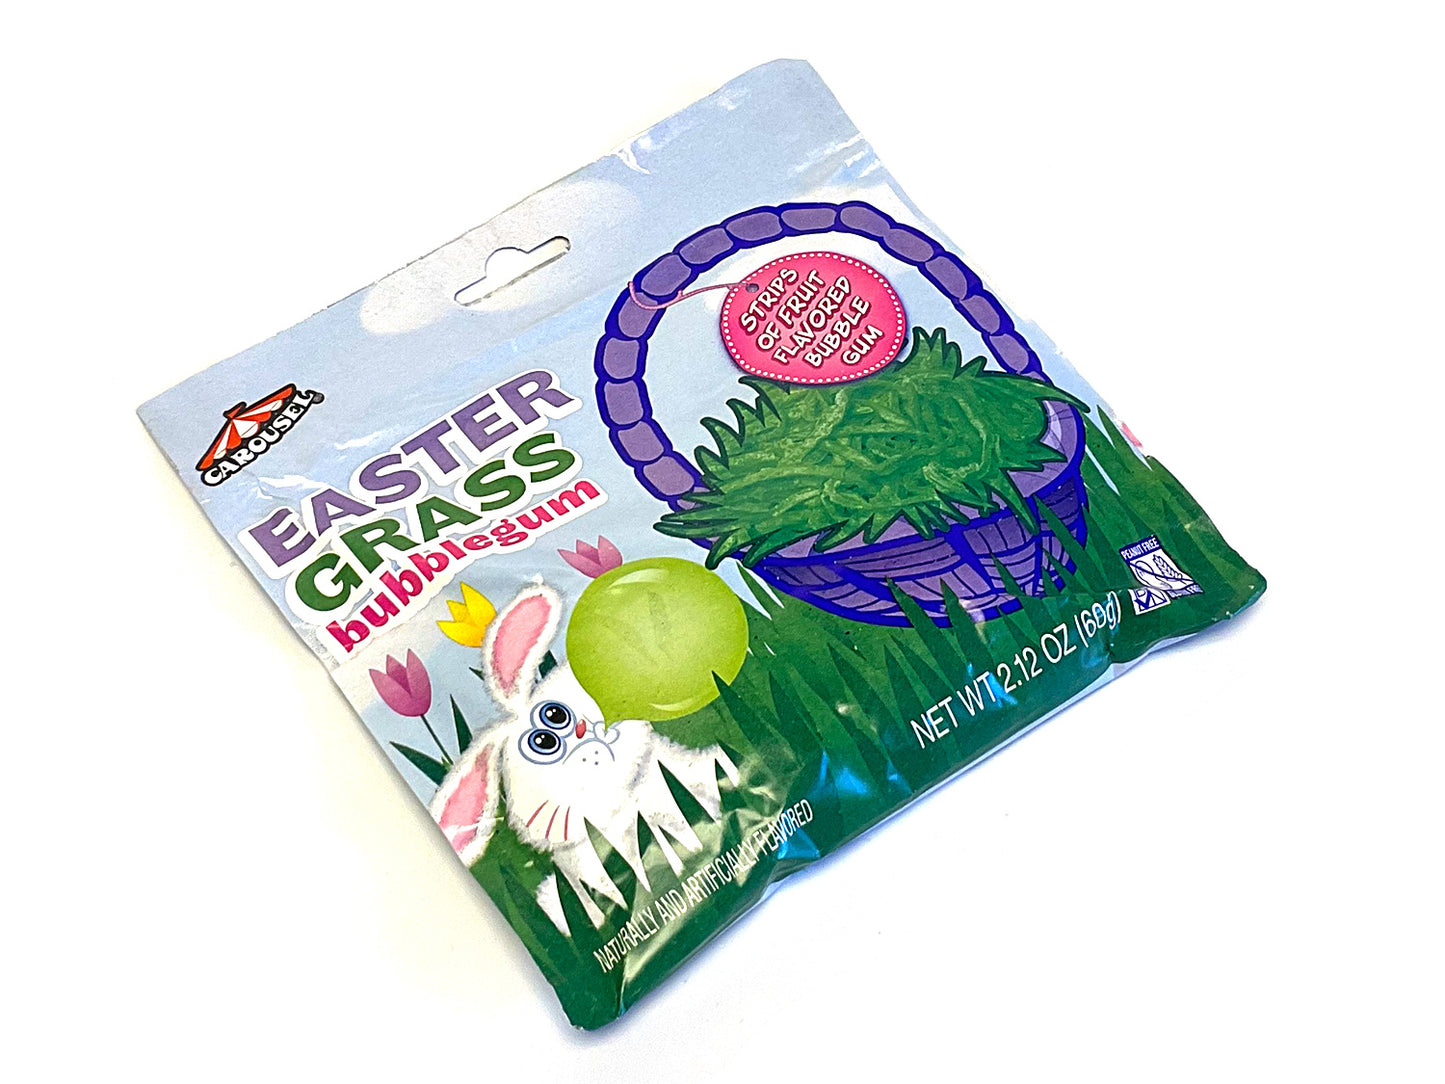 Easter Grass Bubble Gum - 2.12 oz pouch